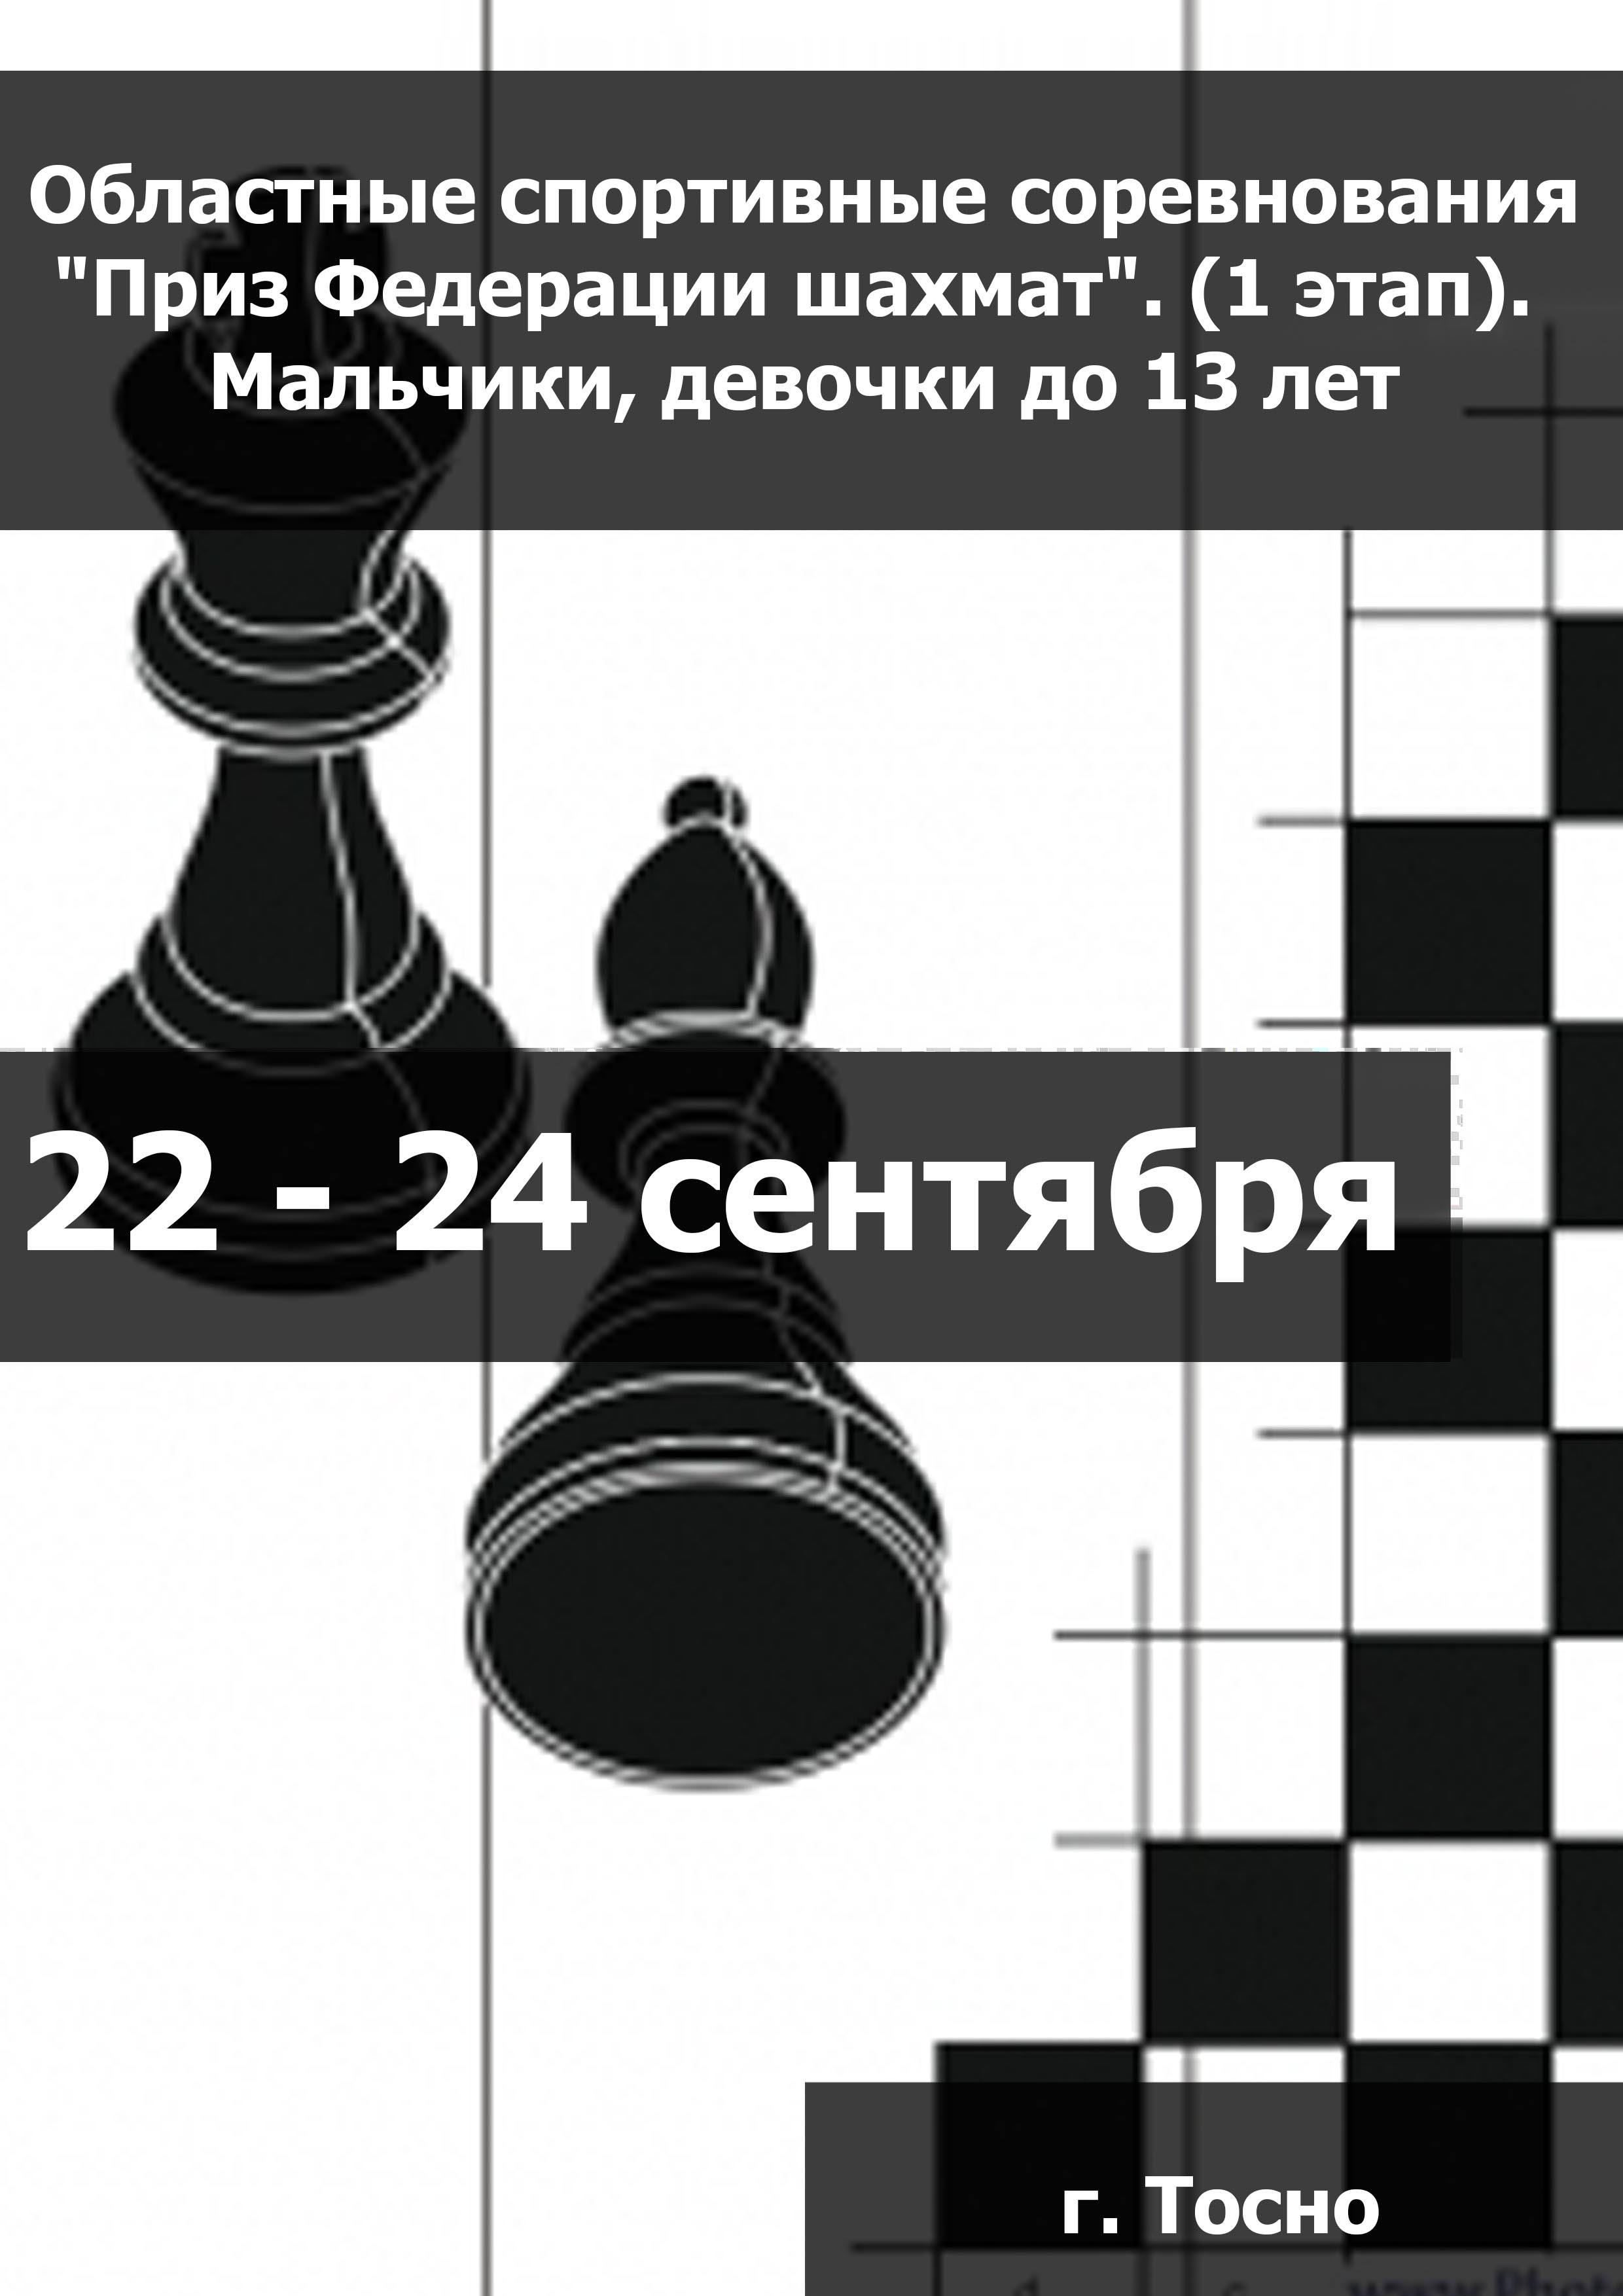 Областные спортивные соревнования "Приз Федерации шахмат". (1 этап).  Мальчики, девочки до 13 лет  22  septembrie
 2023  an
 